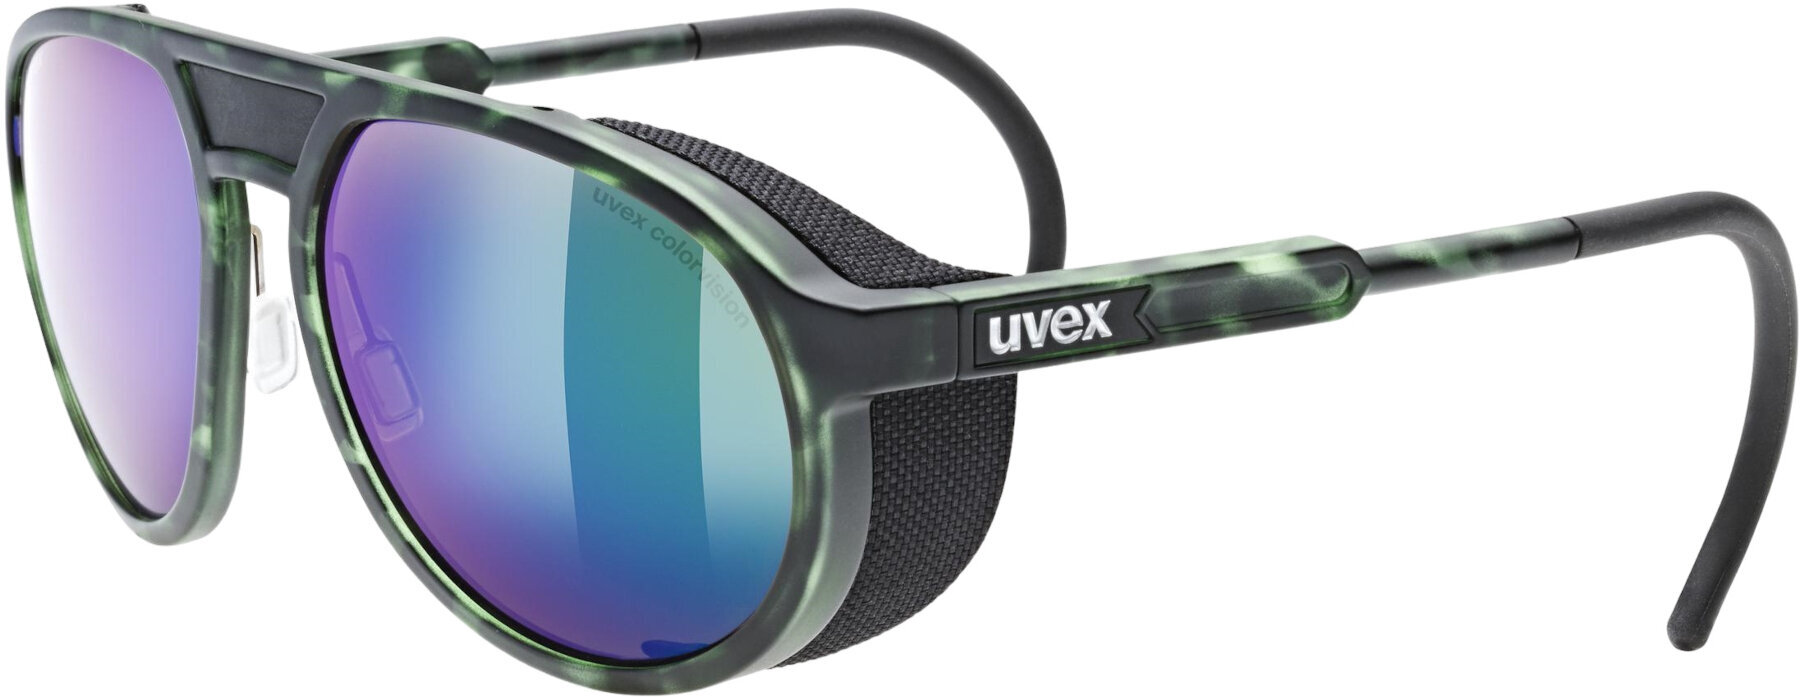 Aurinkolasit ulkoiluun UVEX MTN Classic CV Green Mat/Tortoise/Colorvision Mirror Green Aurinkolasit ulkoiluun